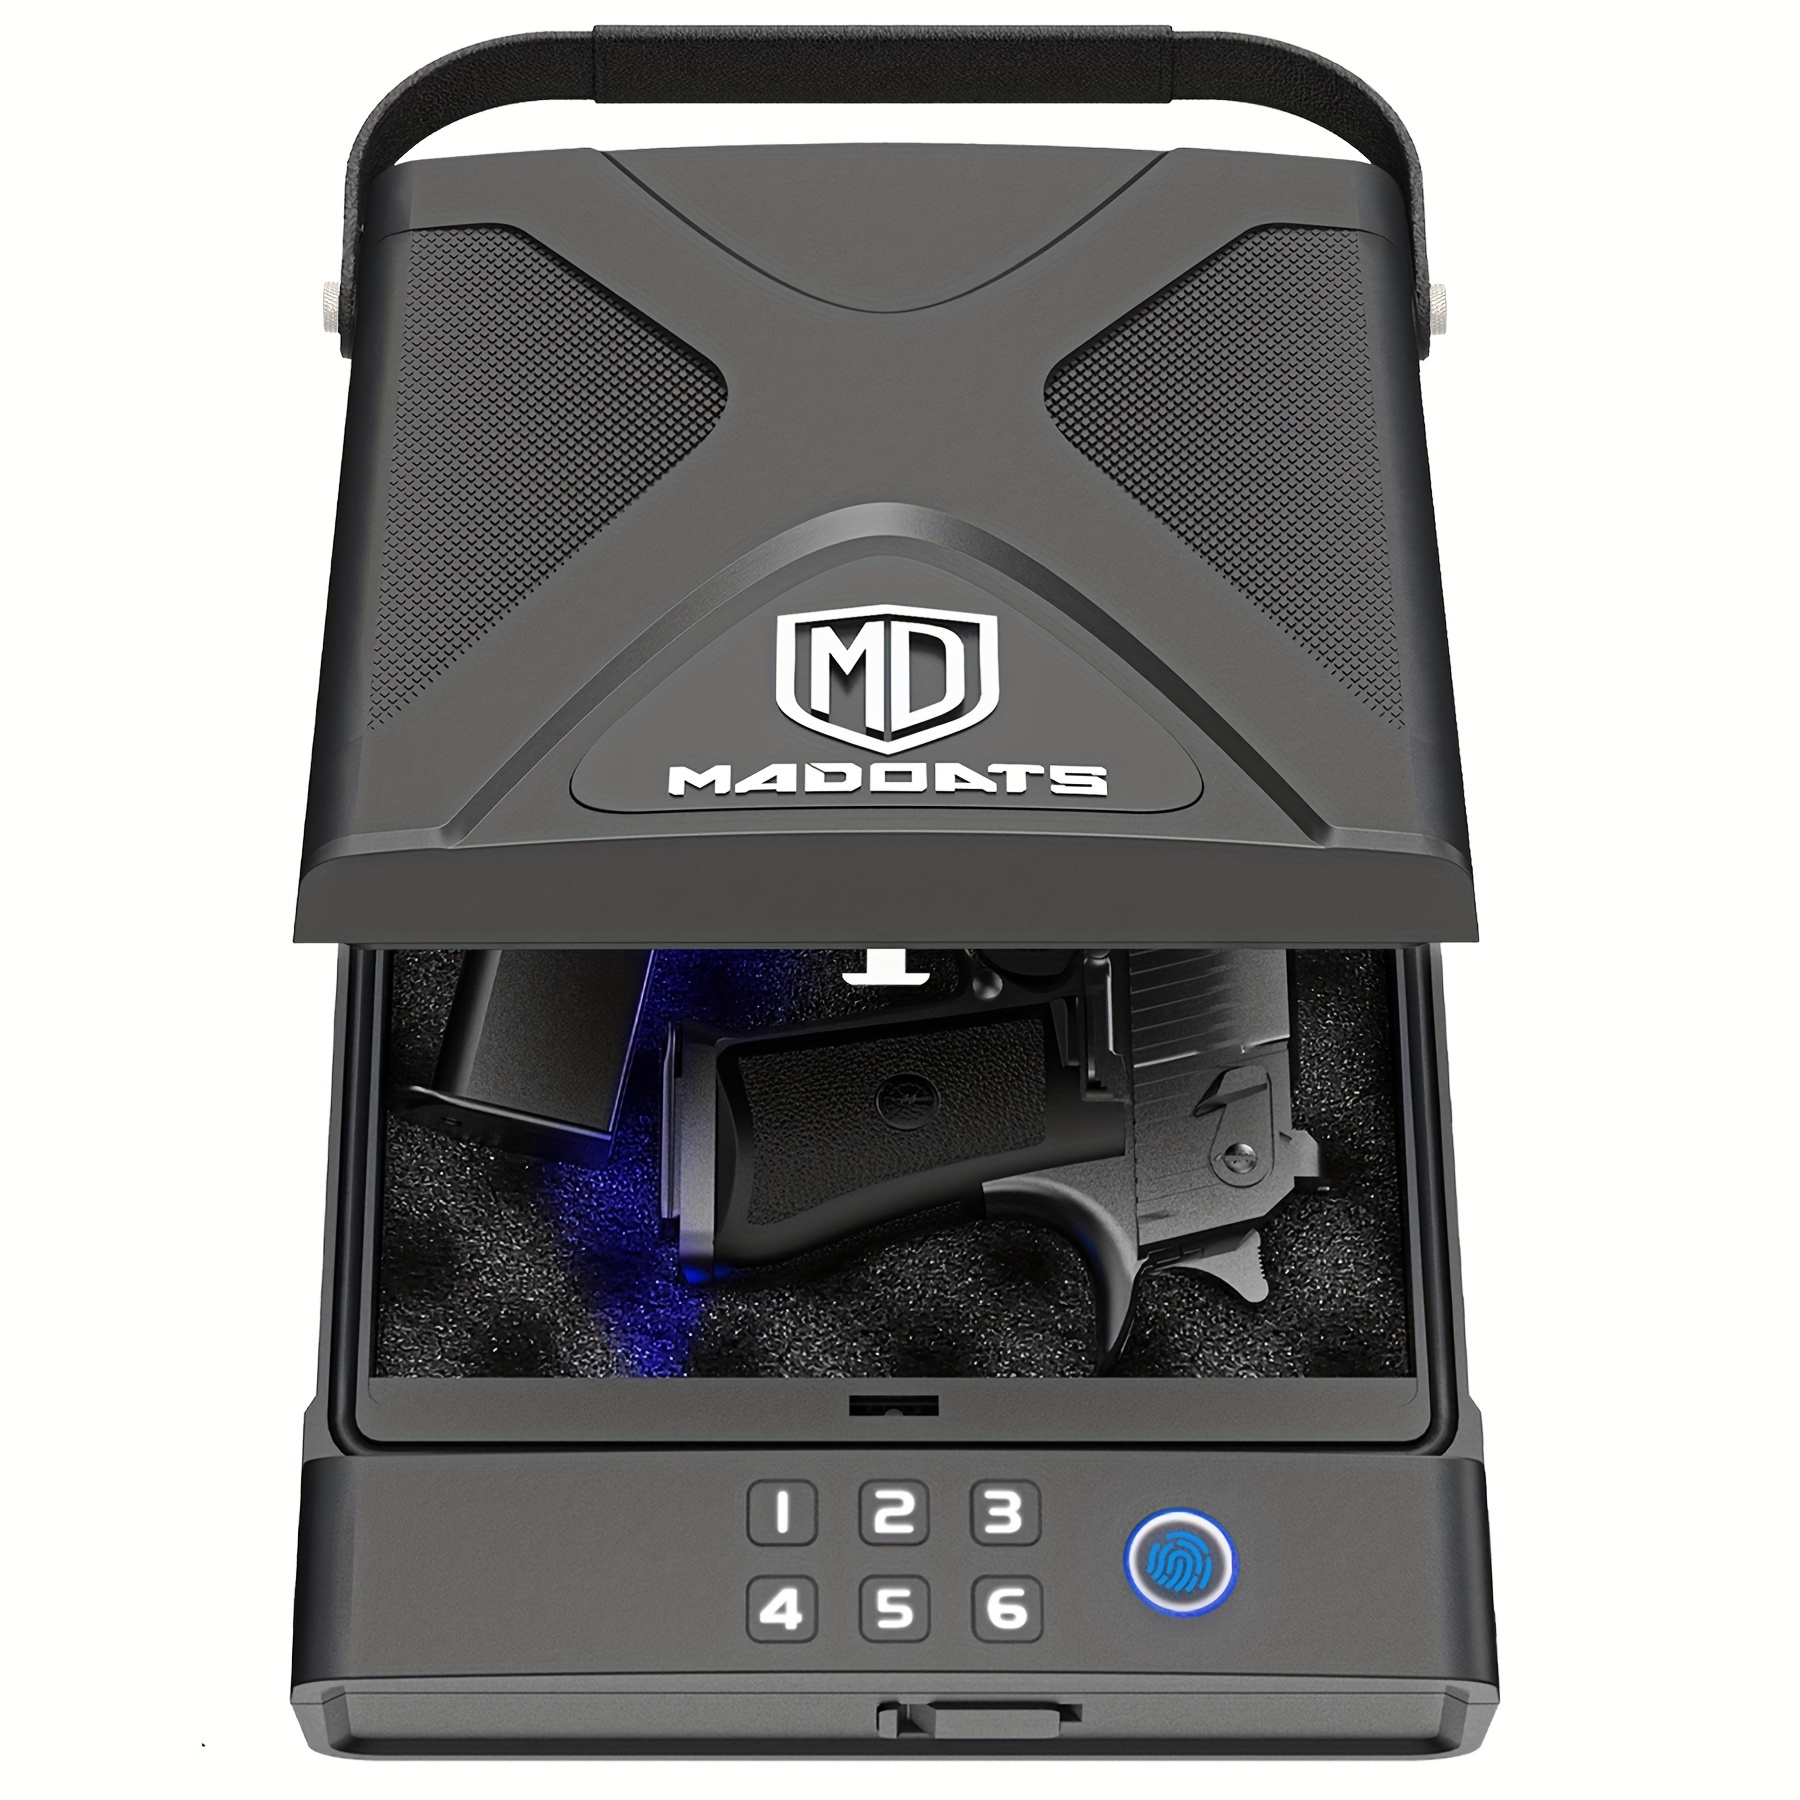 Caja fuerte pequeña, caja de seguridad electrónica digital con combinación  con teclado para dinero, armas de fuego, documentos y objetos de valor